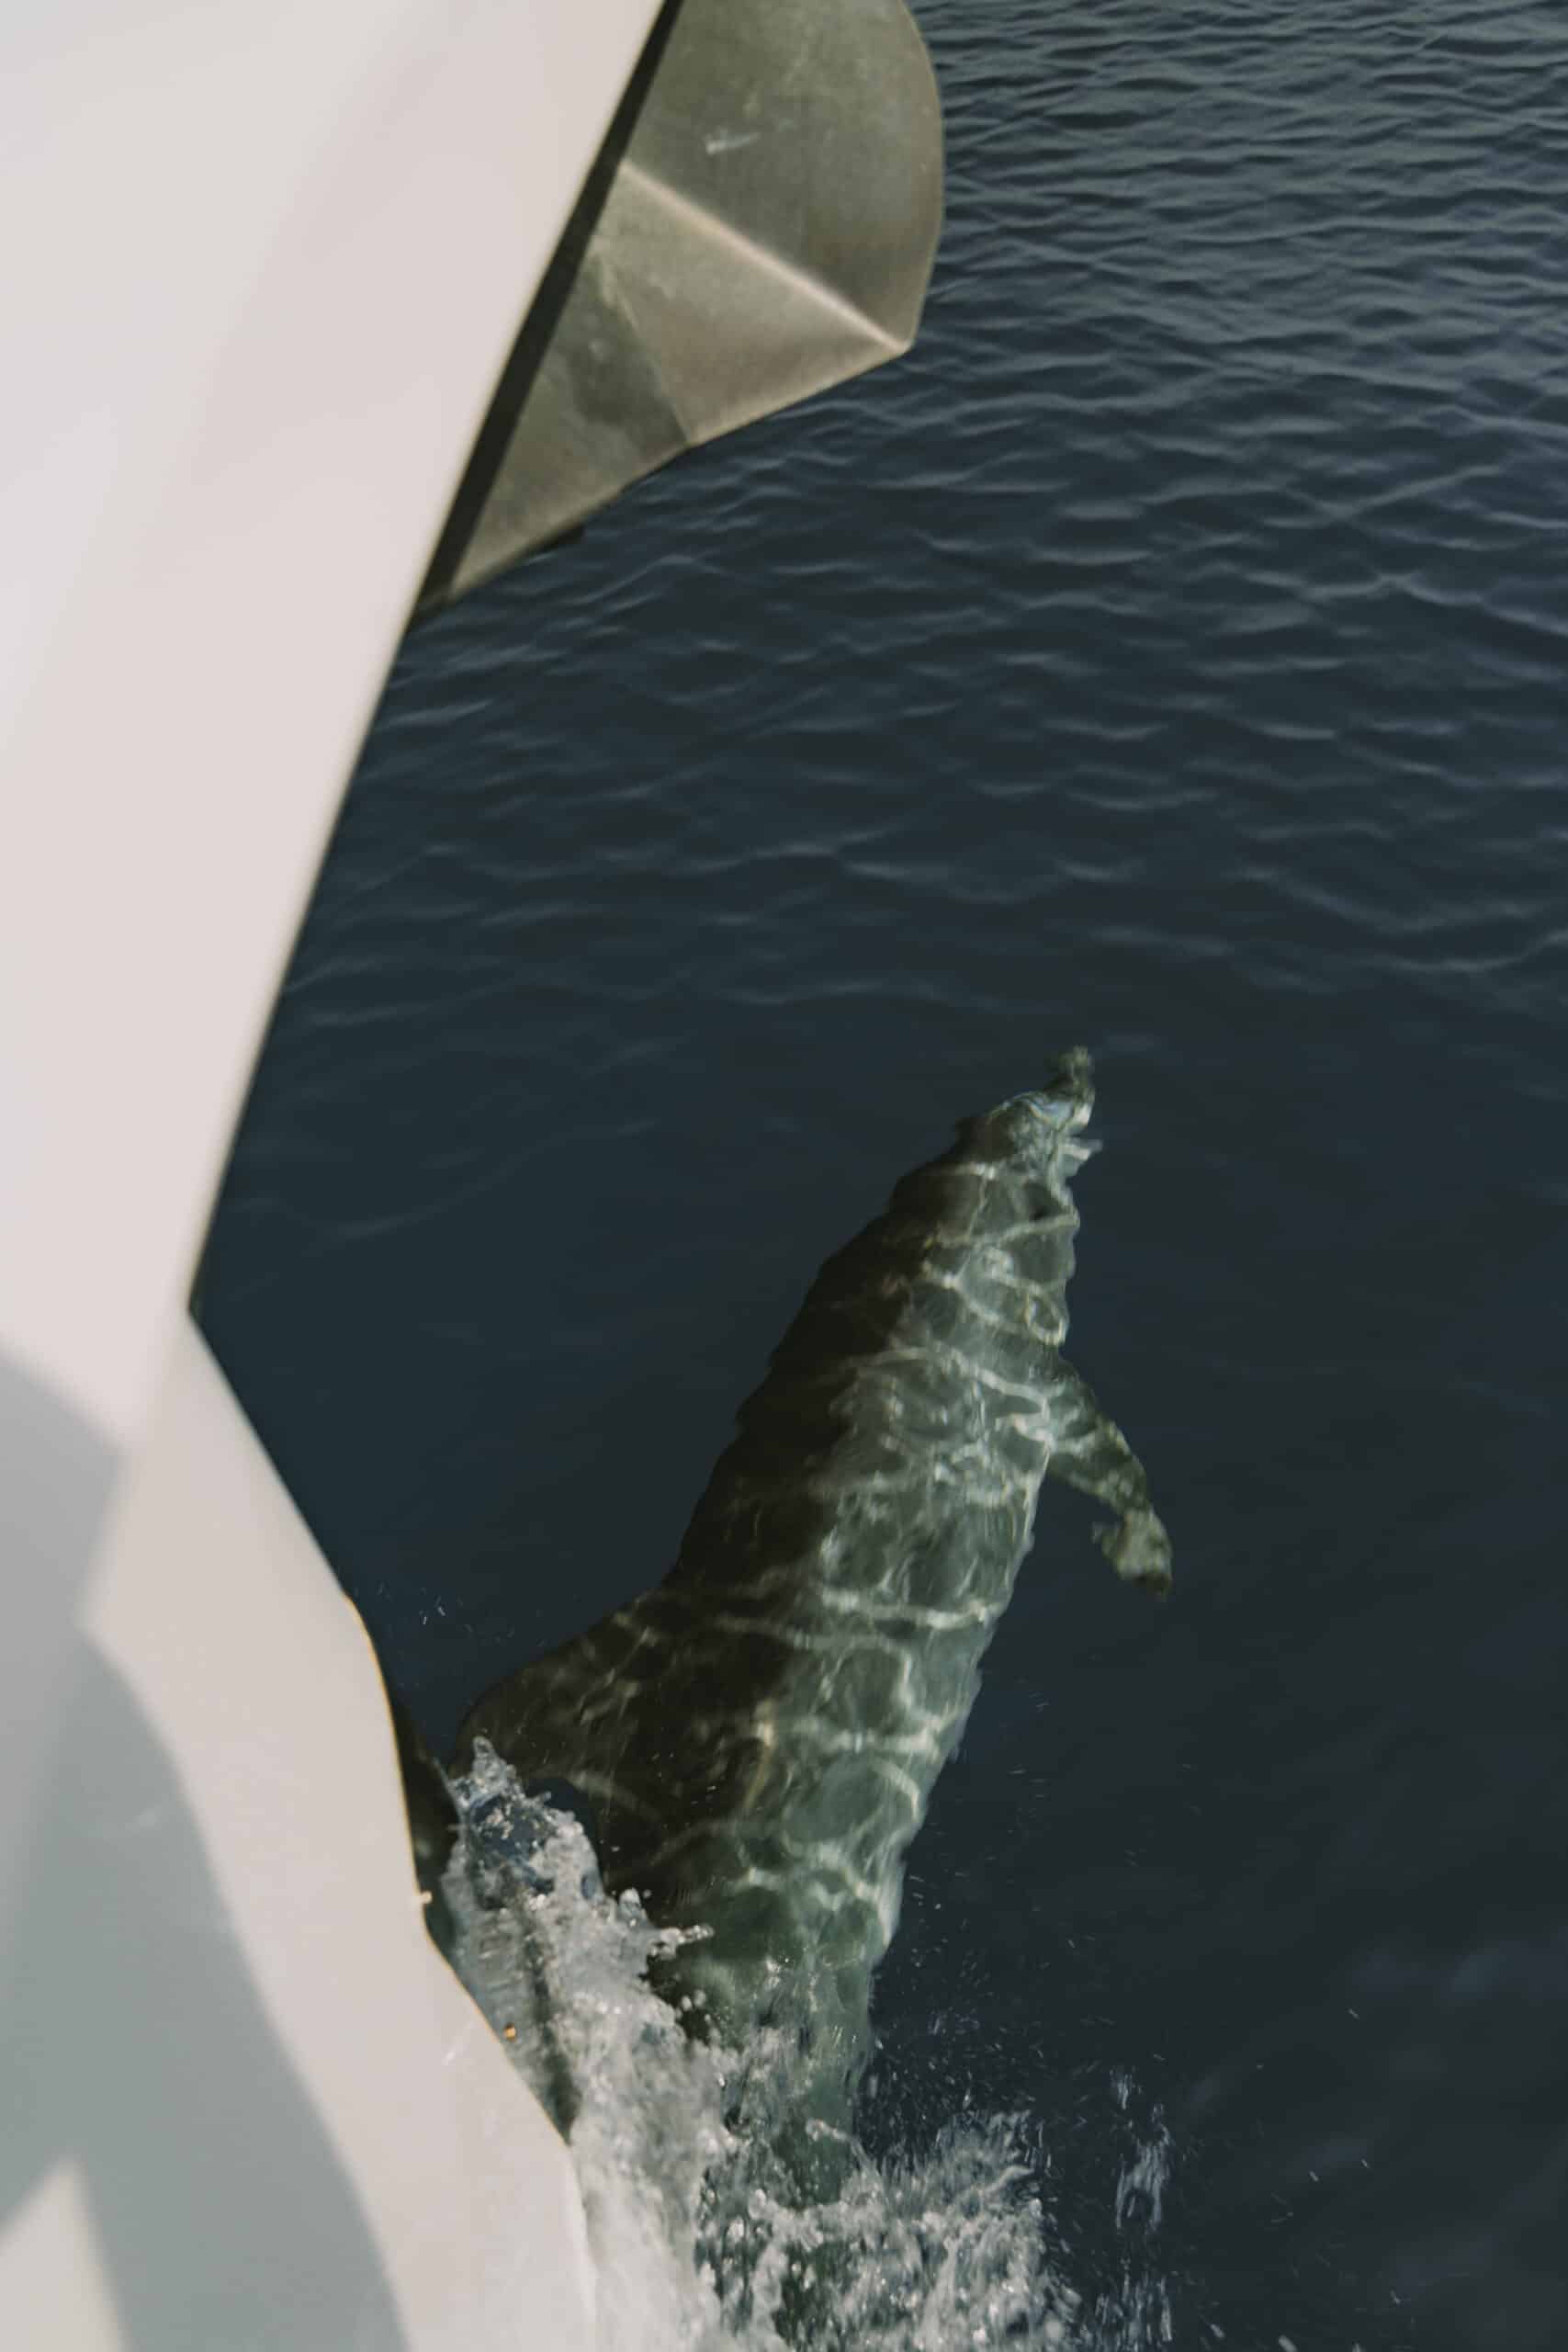 Ein Delphin schwimmt nahe der Oberfläche des dunkelblauen Wassers und ist neben dem Rand eines weißen Segelboots teilweise sichtbar. Der Körper des Delphins erzeugt ein Muster aus Licht und Schatten auf der Wasseroberfläche und verzaubert alle, die Segelabenteuer genießen.